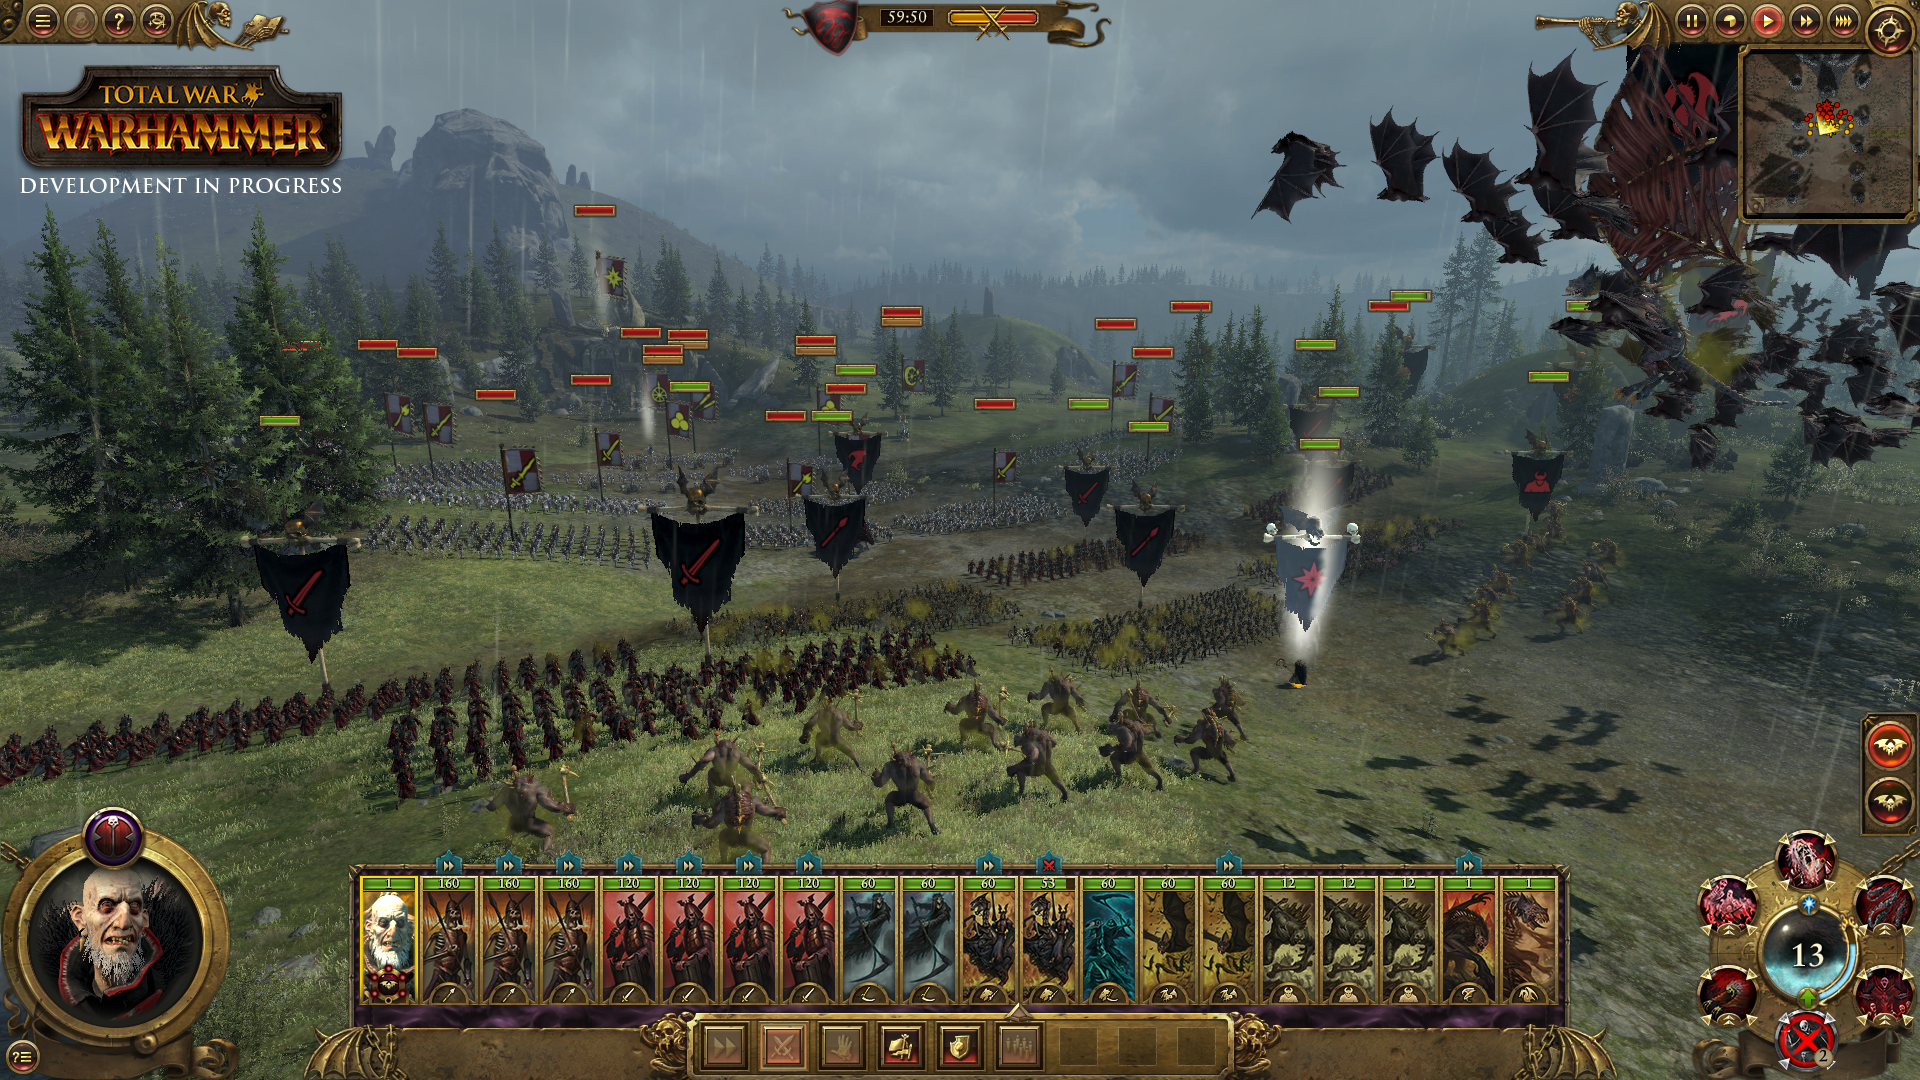 Battle Screenshots image - Total War: Warhammer - Mod DB